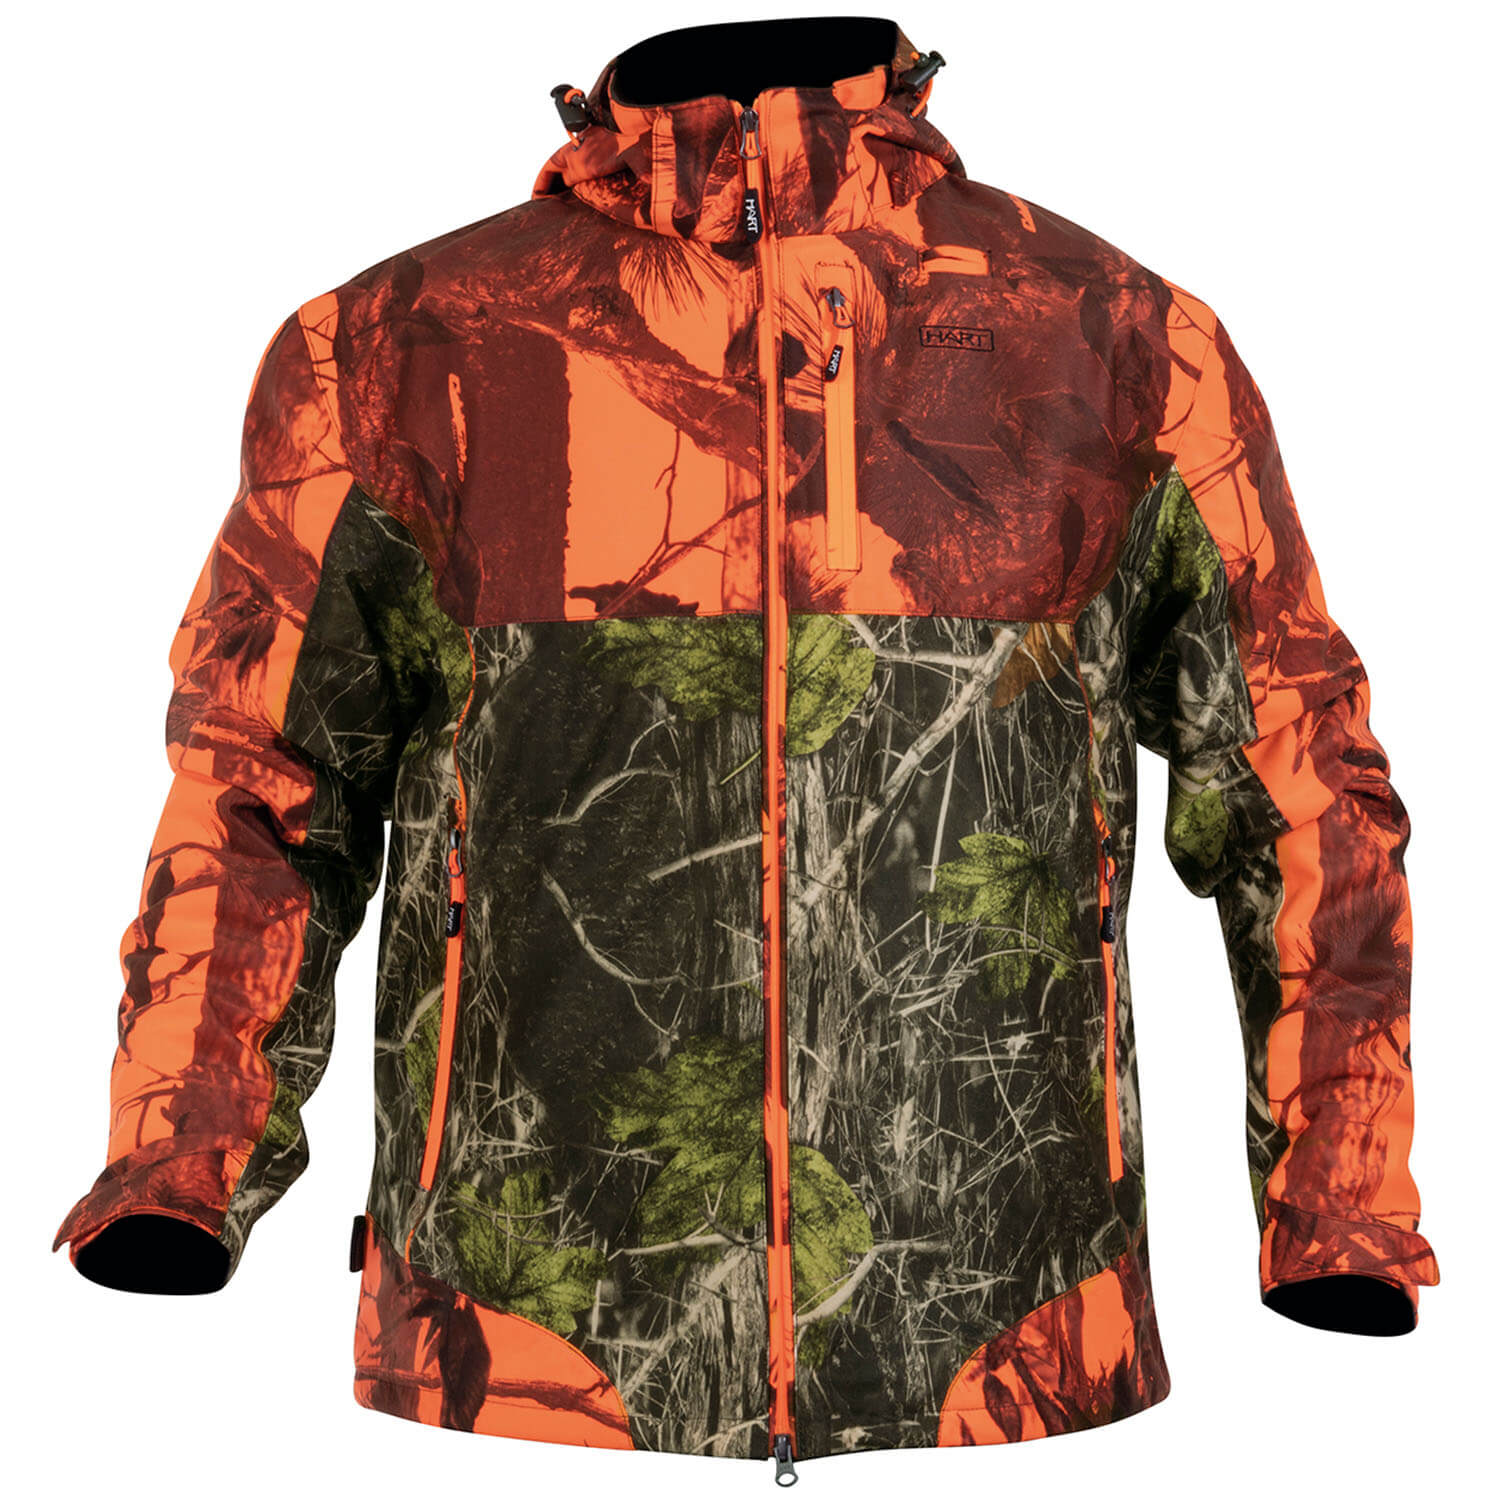 Hart Jacket Donon-J (camo blaze/ camo forest) - Hunting Jackets